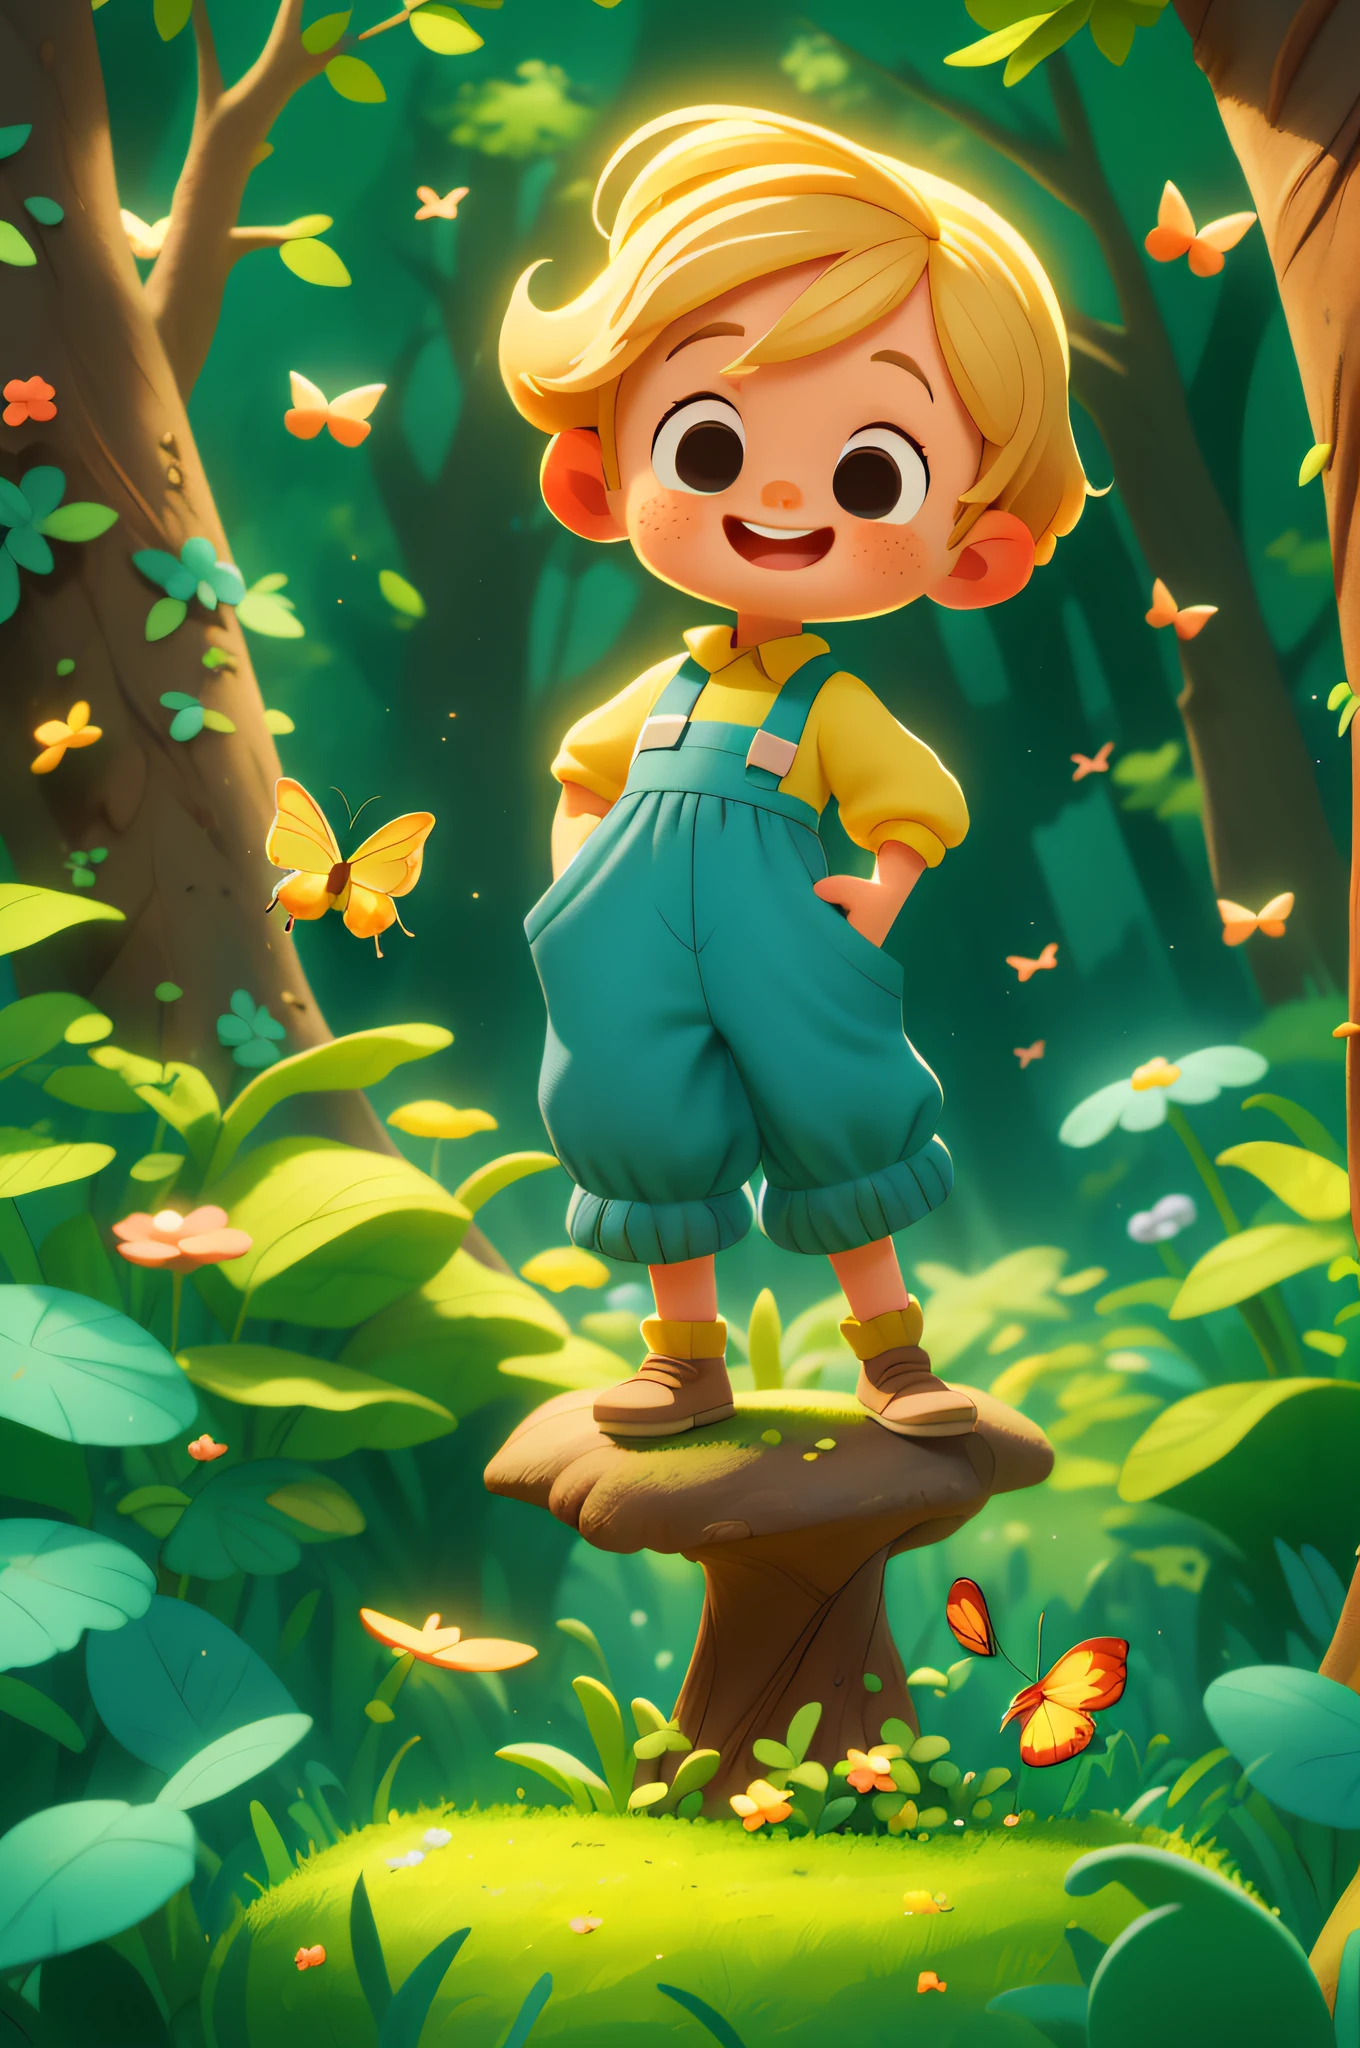 A beautiful happy Kind standing, kurzes, blondes Haar, trägt ein blaues Weltraumkostüm, mit einem Schmetterling spielen, draußen, Hintergrund Wald, Kind, Ton, Pixar-Stil, 3D, carTon, Detailliertes Gesicht, asymmetrisch, Vor einem großen Baum, voller goldener Lichter um ihn herum